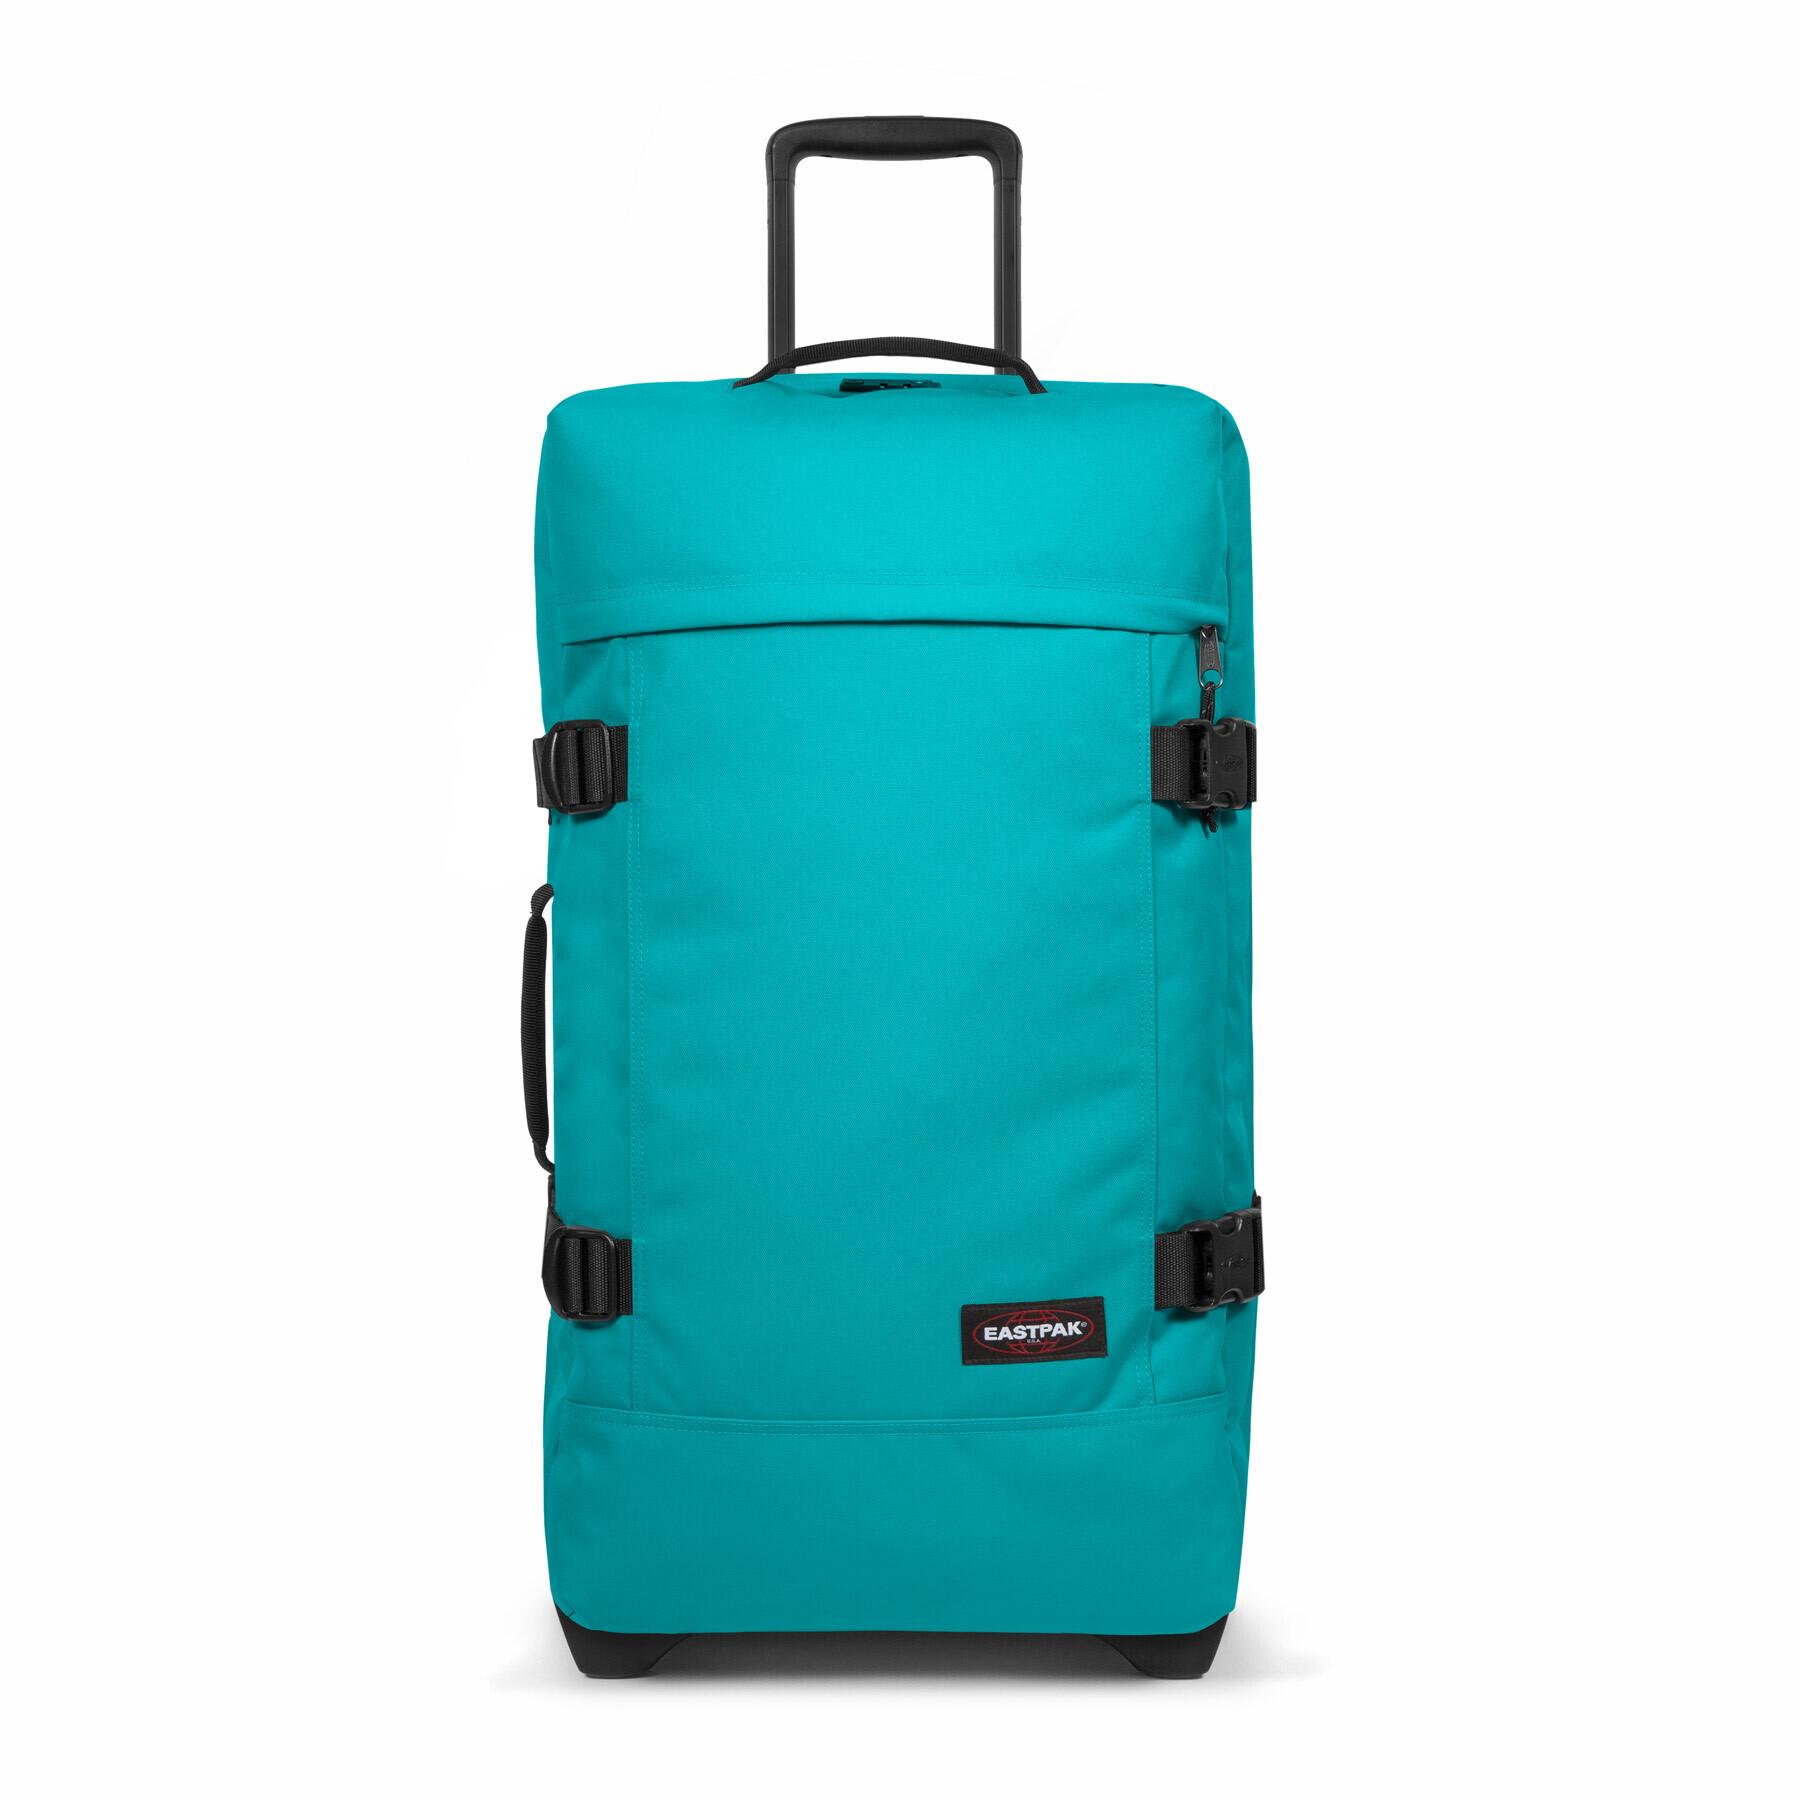 Eastpak Tranverz M suitcase